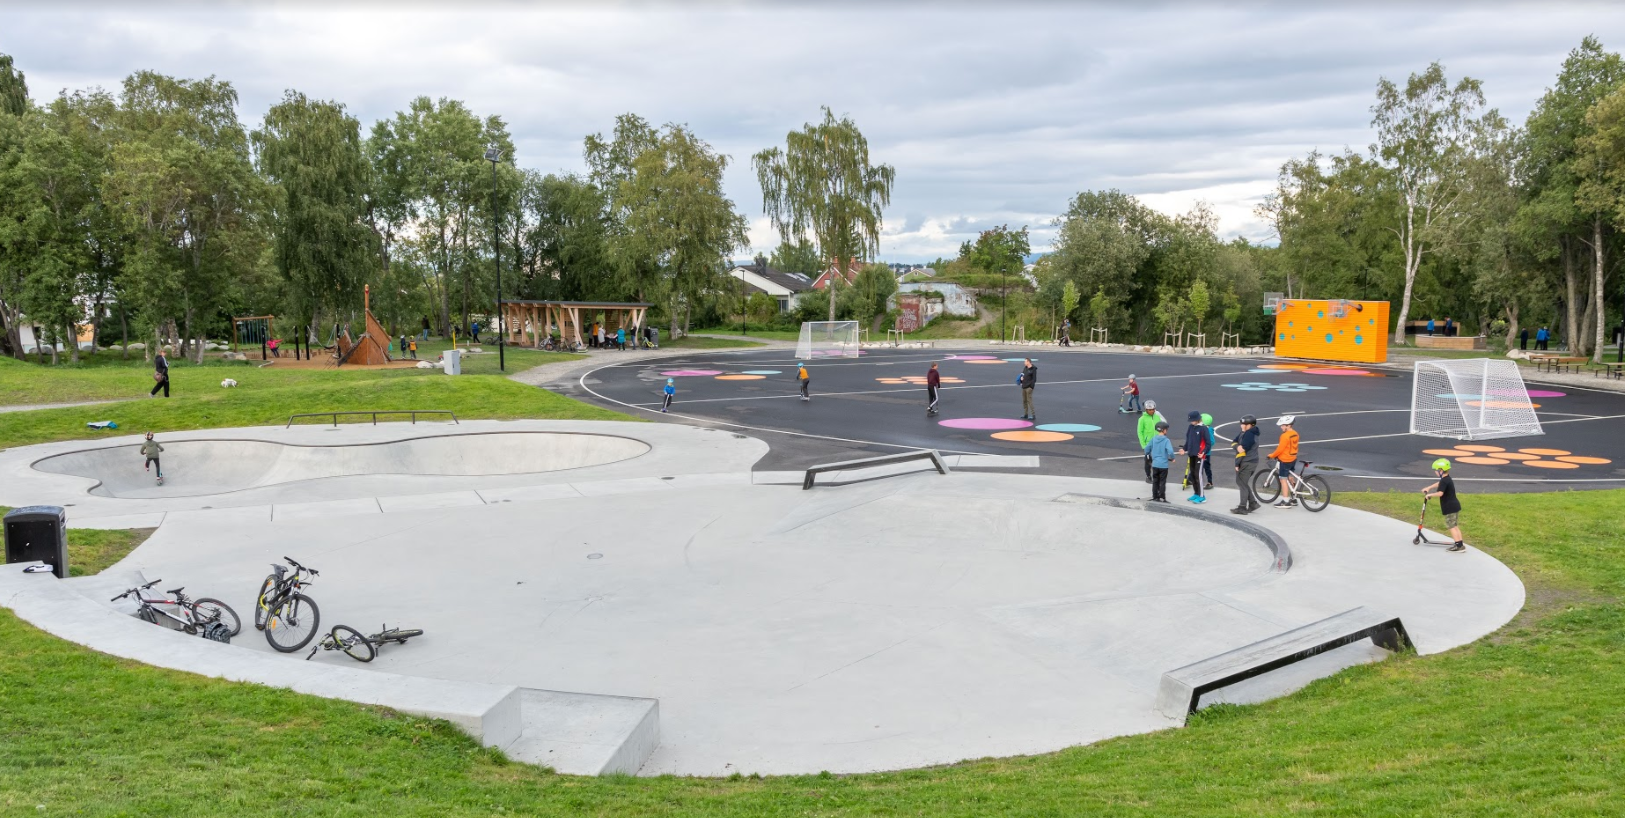 Skjermvegen aktivitetspark ligger på Byåsen i Trondheim